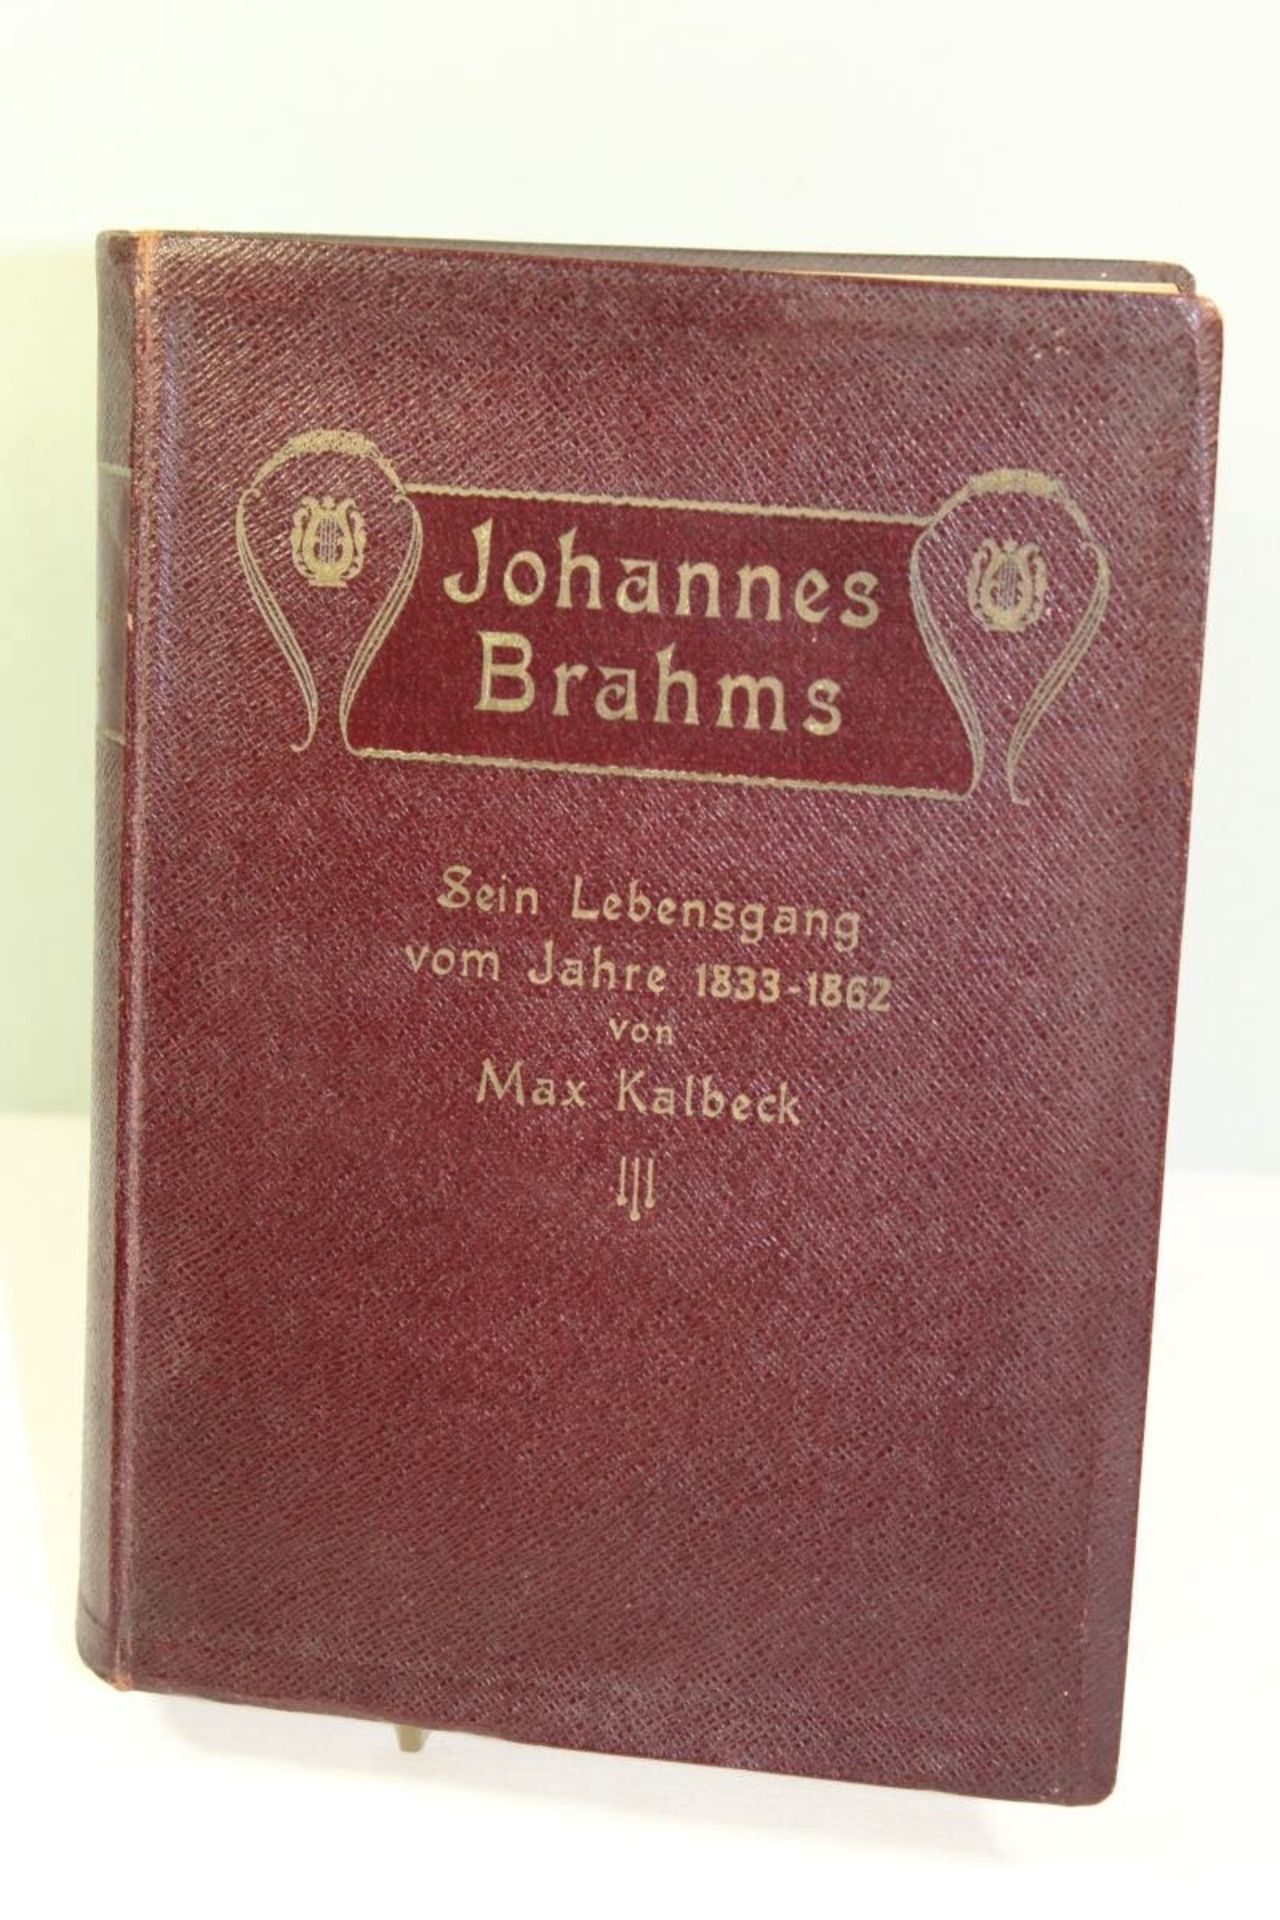 Johannes Brahms - Sein Lebensgang vom Jahre 1833-1862, Max Kalbeck, 1903.